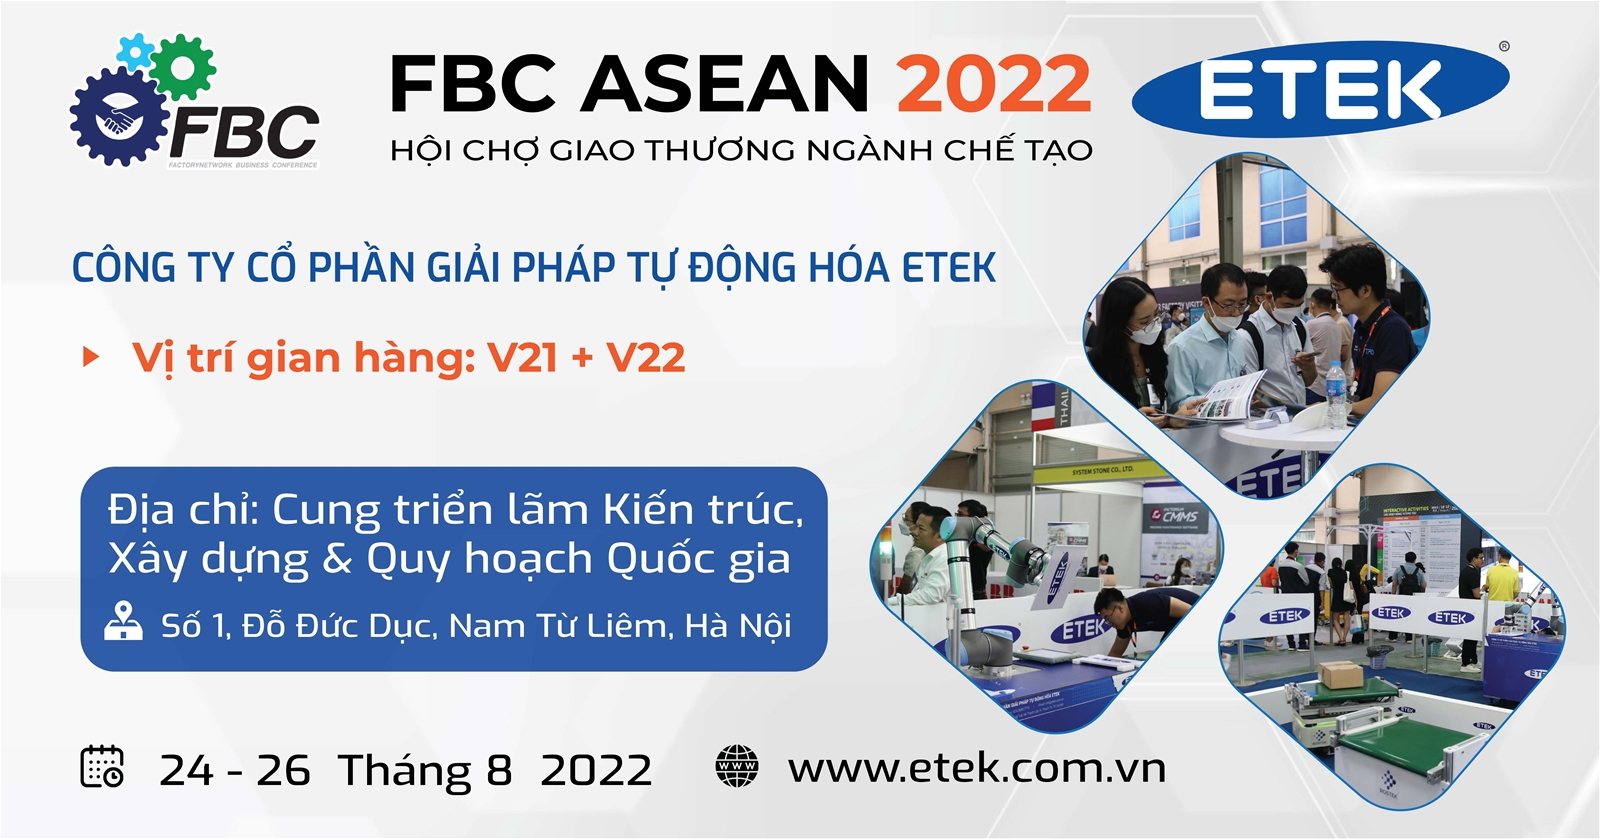 ETEK kính mời Quý doanh nghiệp tới tham quan robot, giải pháp tự động hóa được trưng bày tại Hội chợ FBC ASEAN 2022